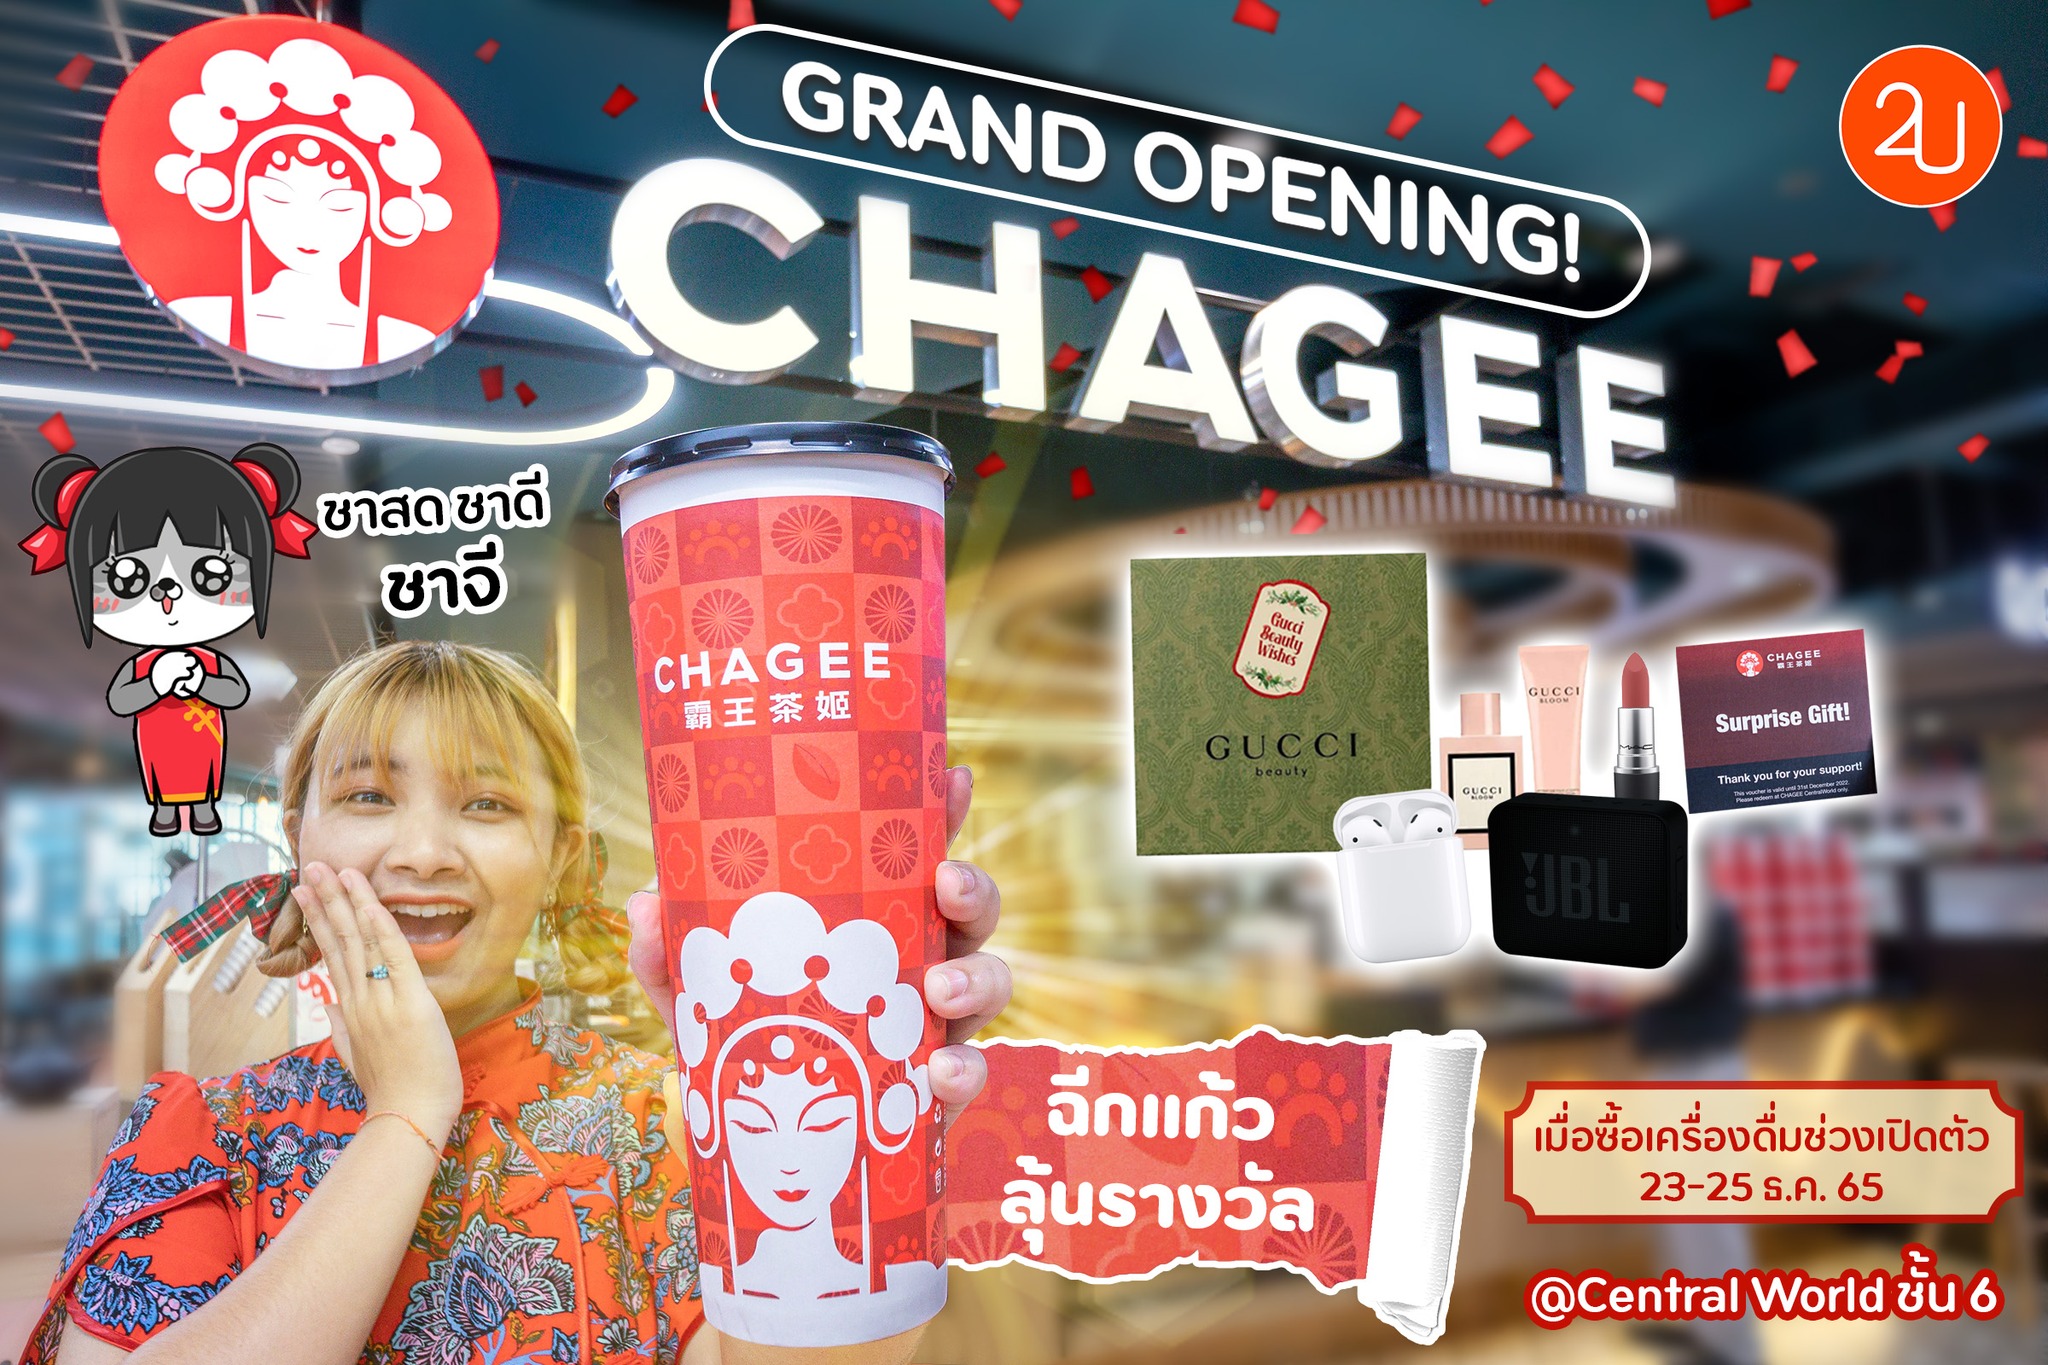 ครั้งแรกในไทย เปิดตัวแบบจัดใหญ่ส่งท้ายปี‼️ “CHAGEE ชาจี” แบรนด์ชาพรีเมียมจากประเทศจีน